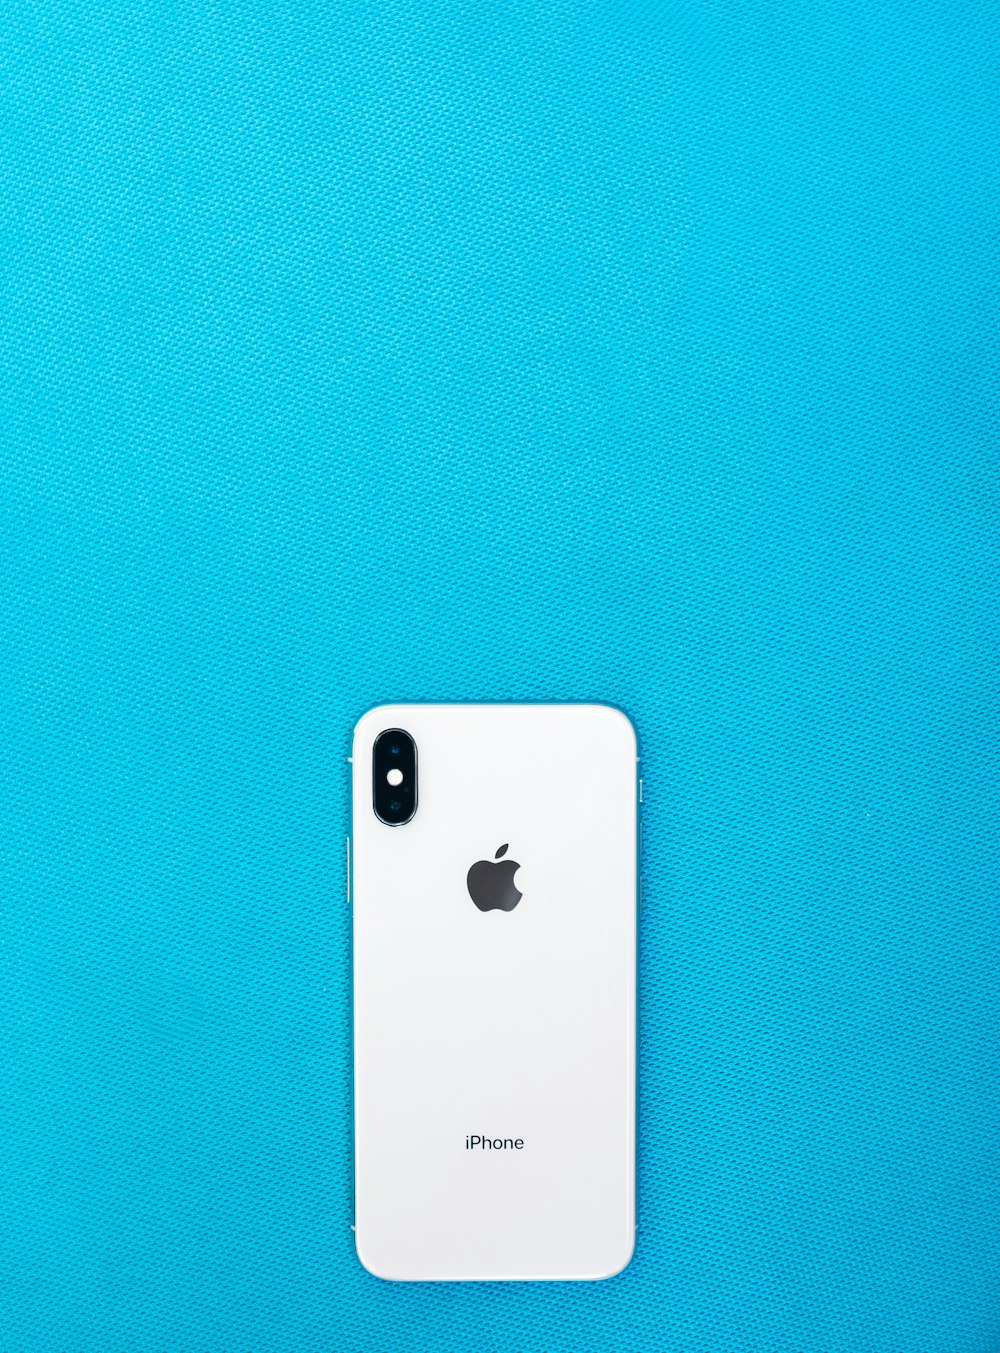 iPhone post-2017 en superficie verde azulado